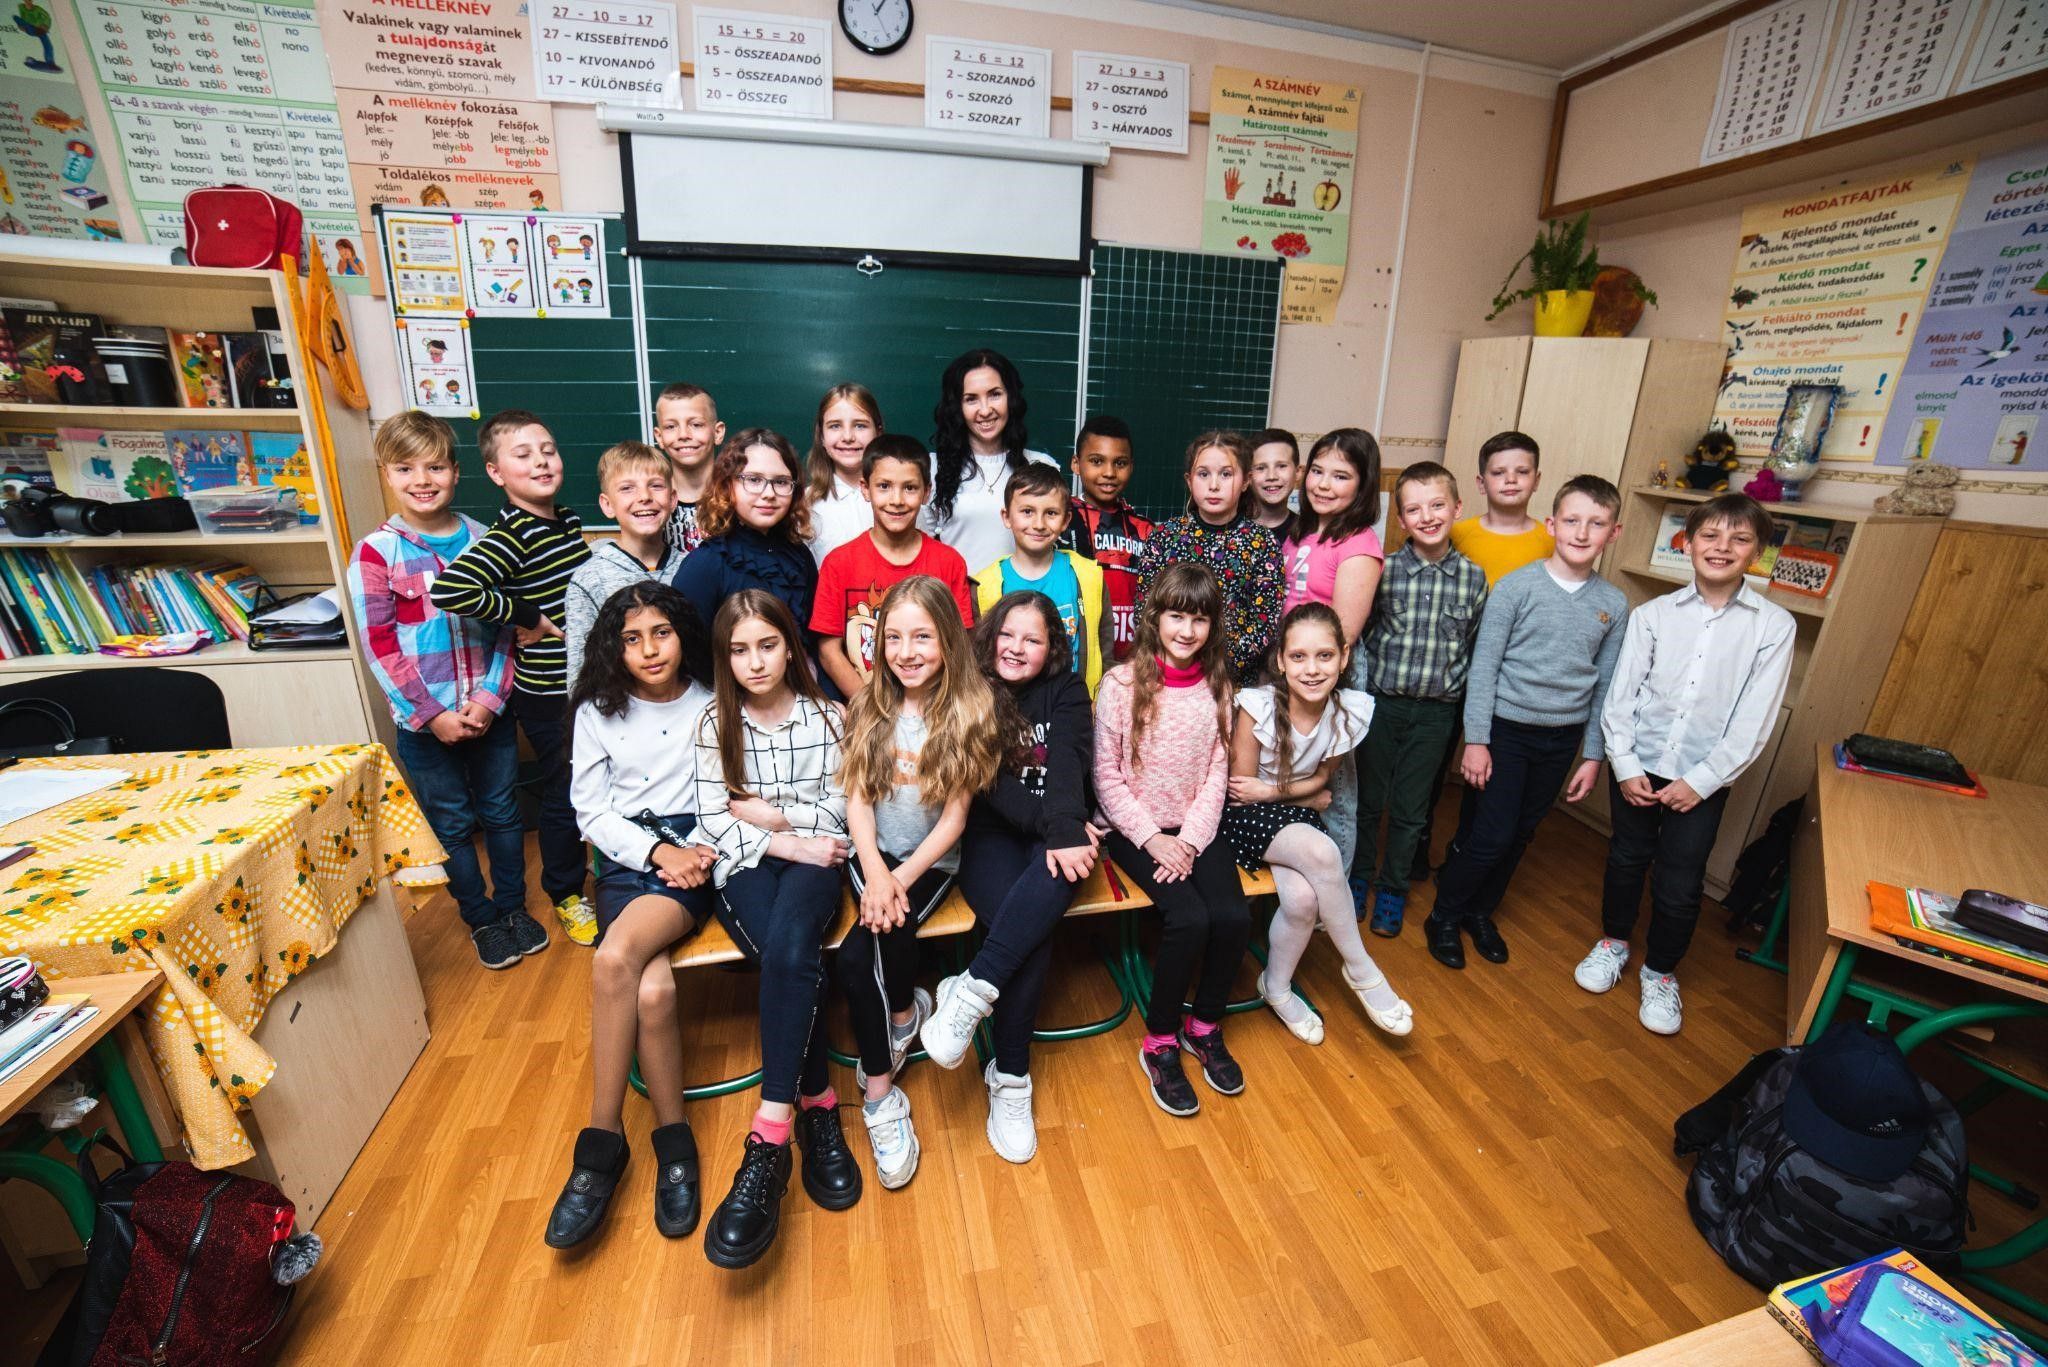 Pécsi Katalin: Köszönettel tartozom édesanyámnak, mert nem tévedett az iskolaválasztással